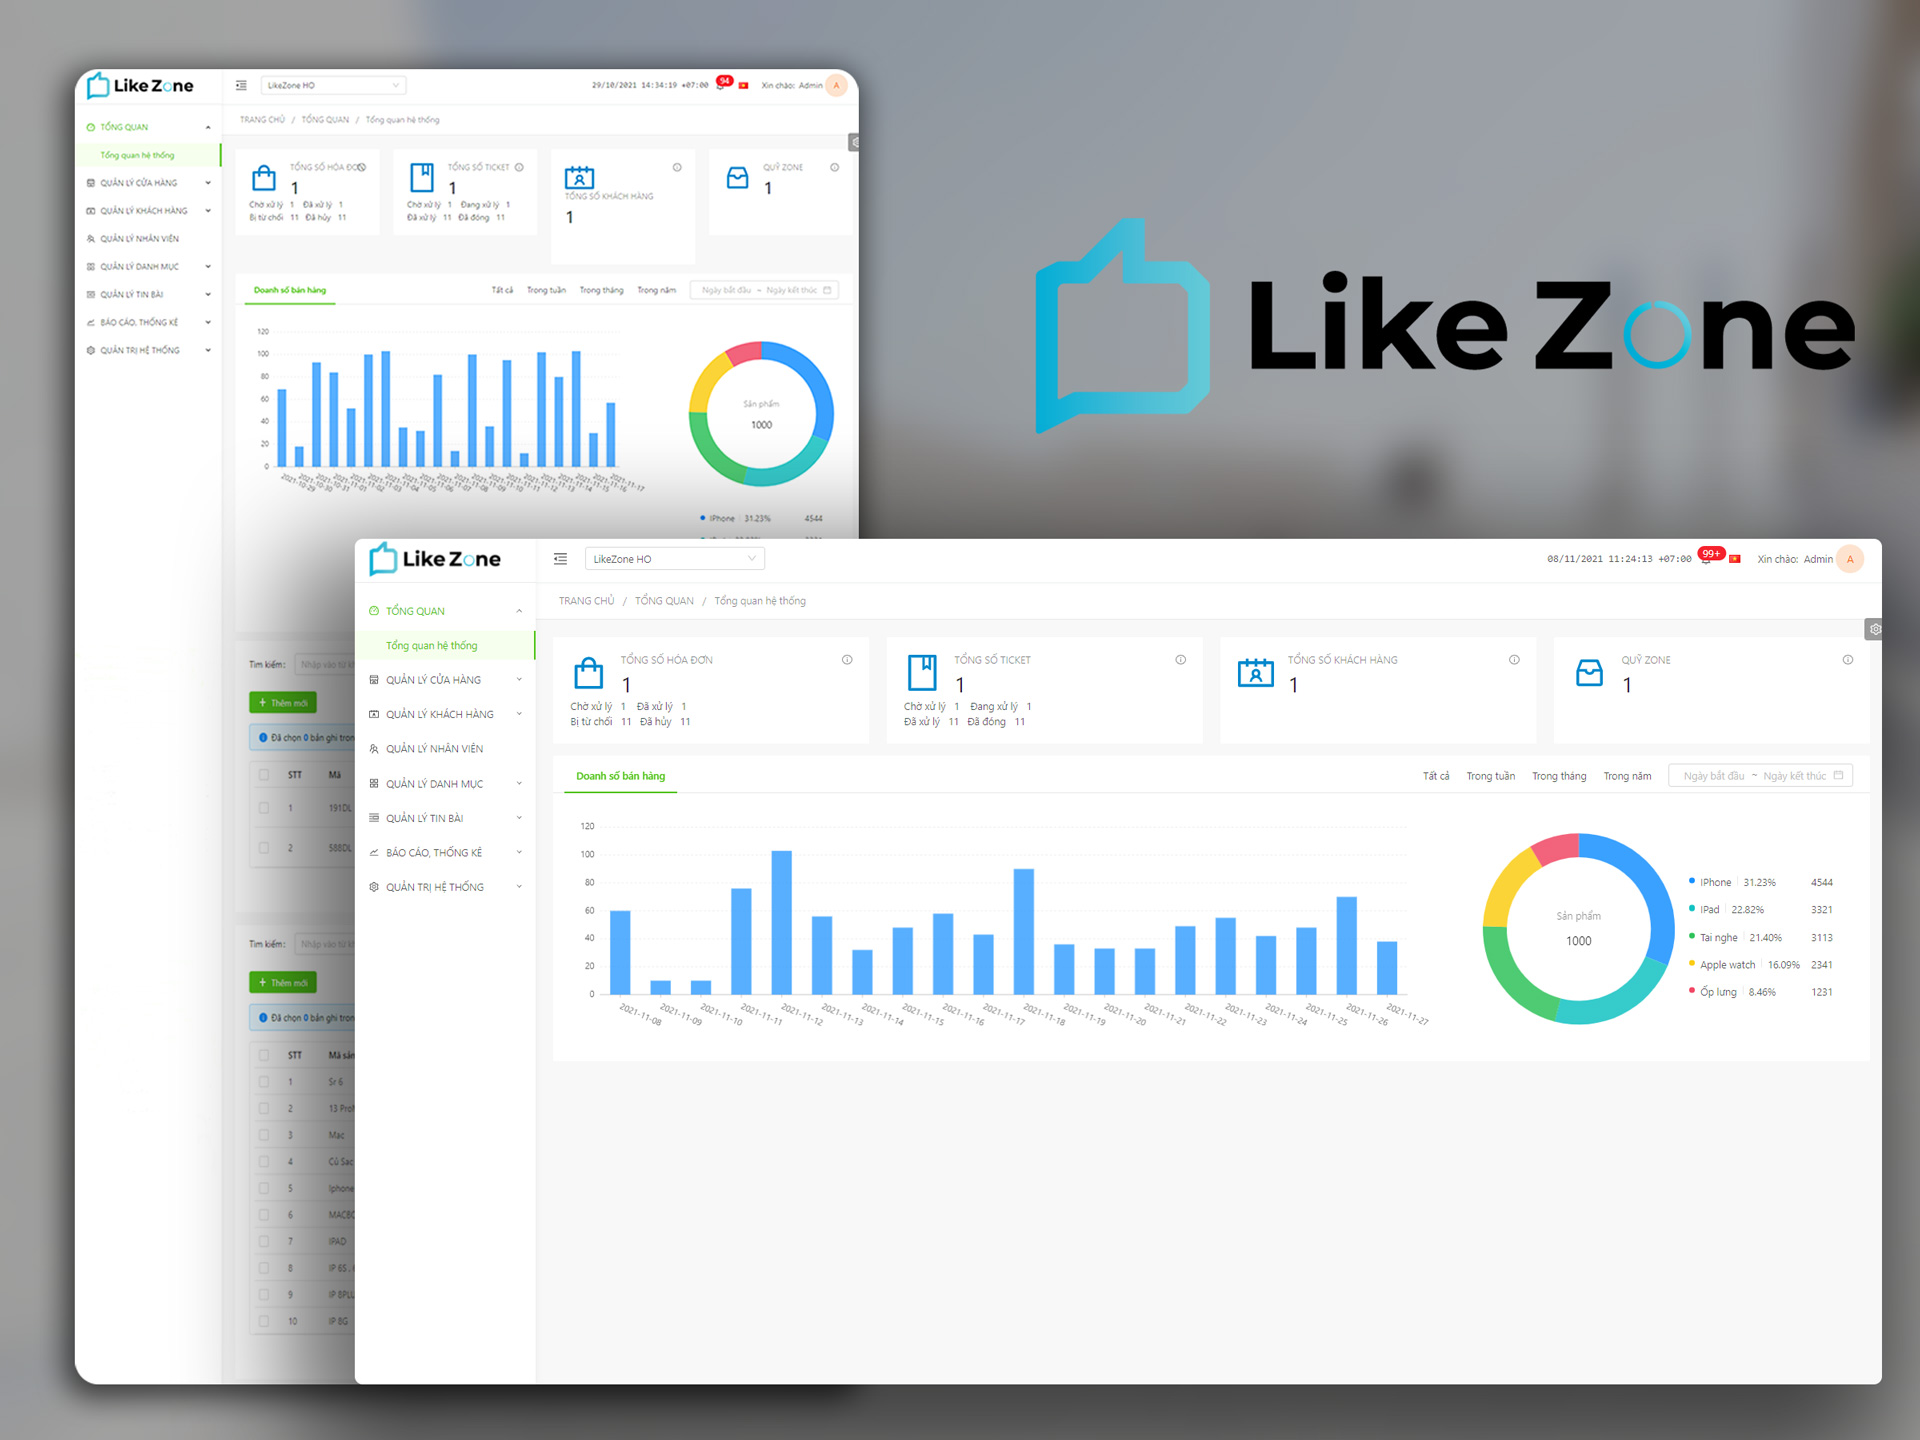 LikeZone Sales - Overview